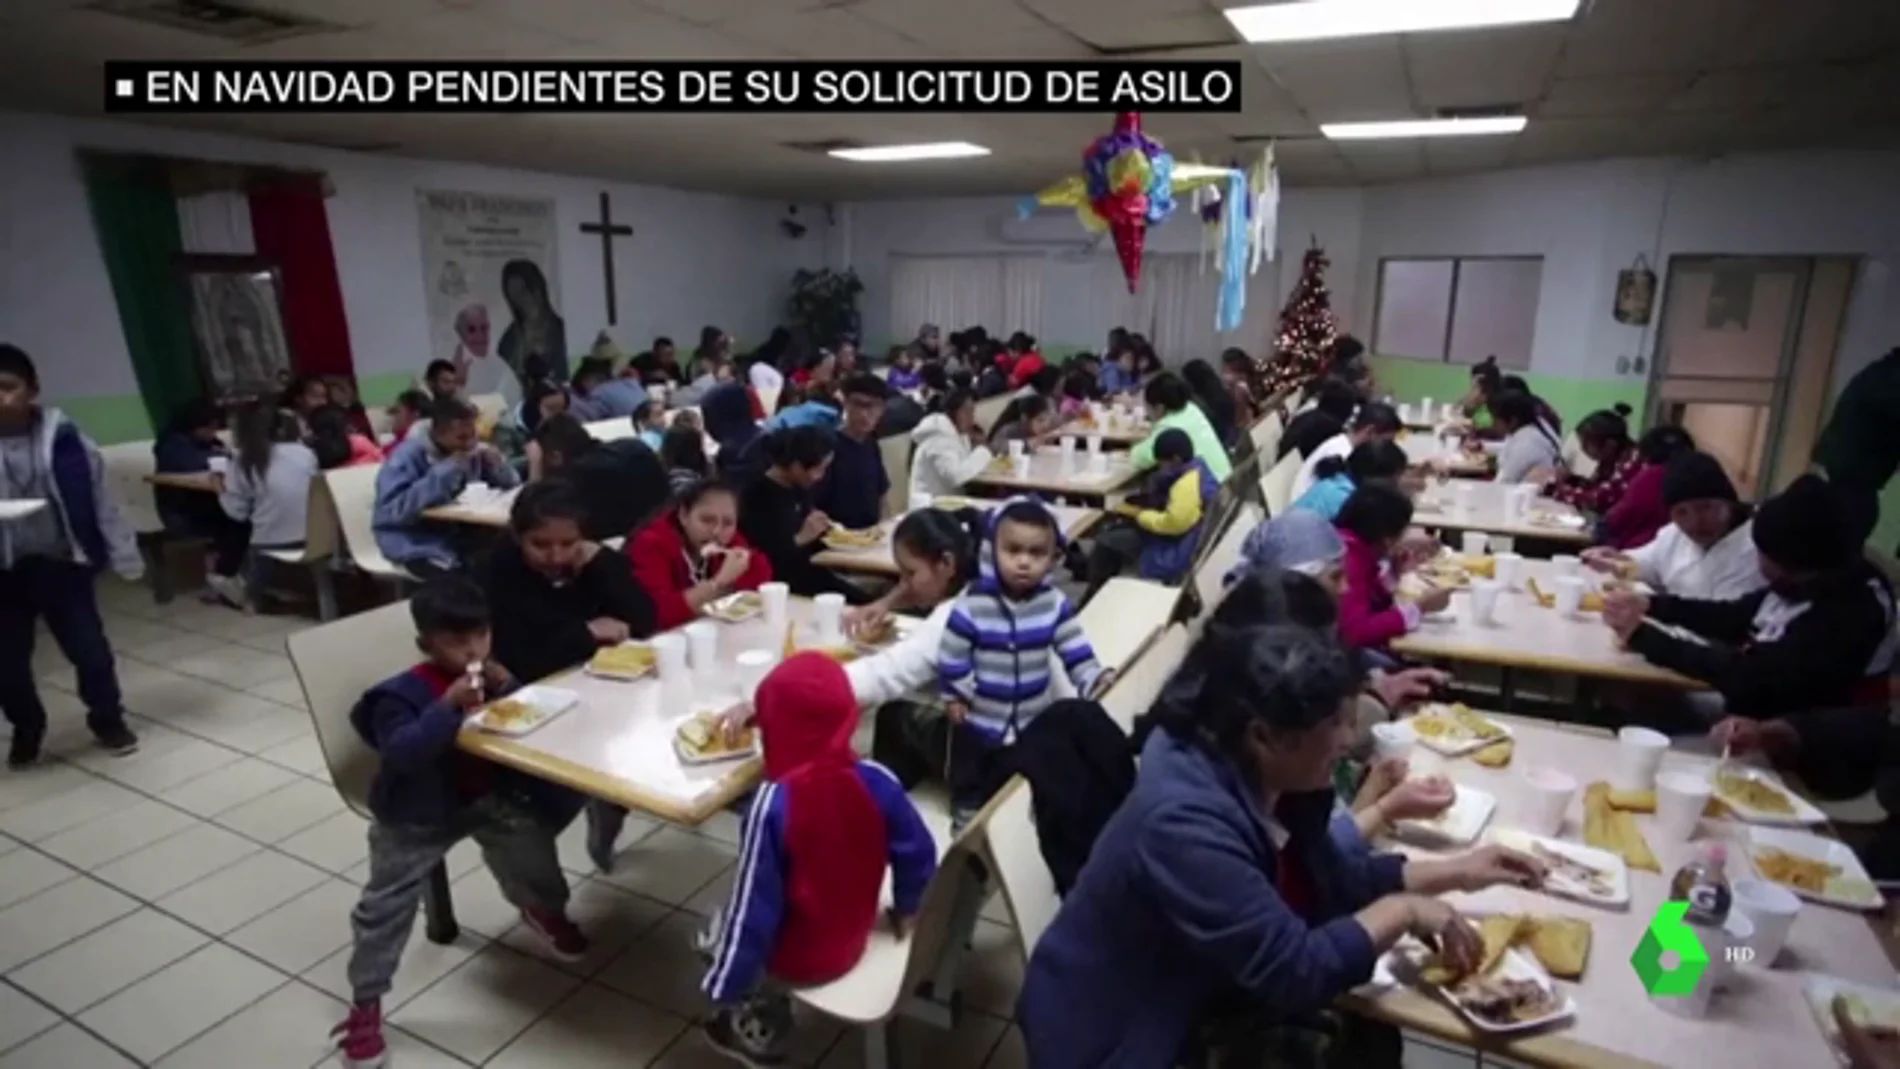 Cientos de migrantes expulsados de Estados Unidos pasan las navidades pendientes de recibir asilo